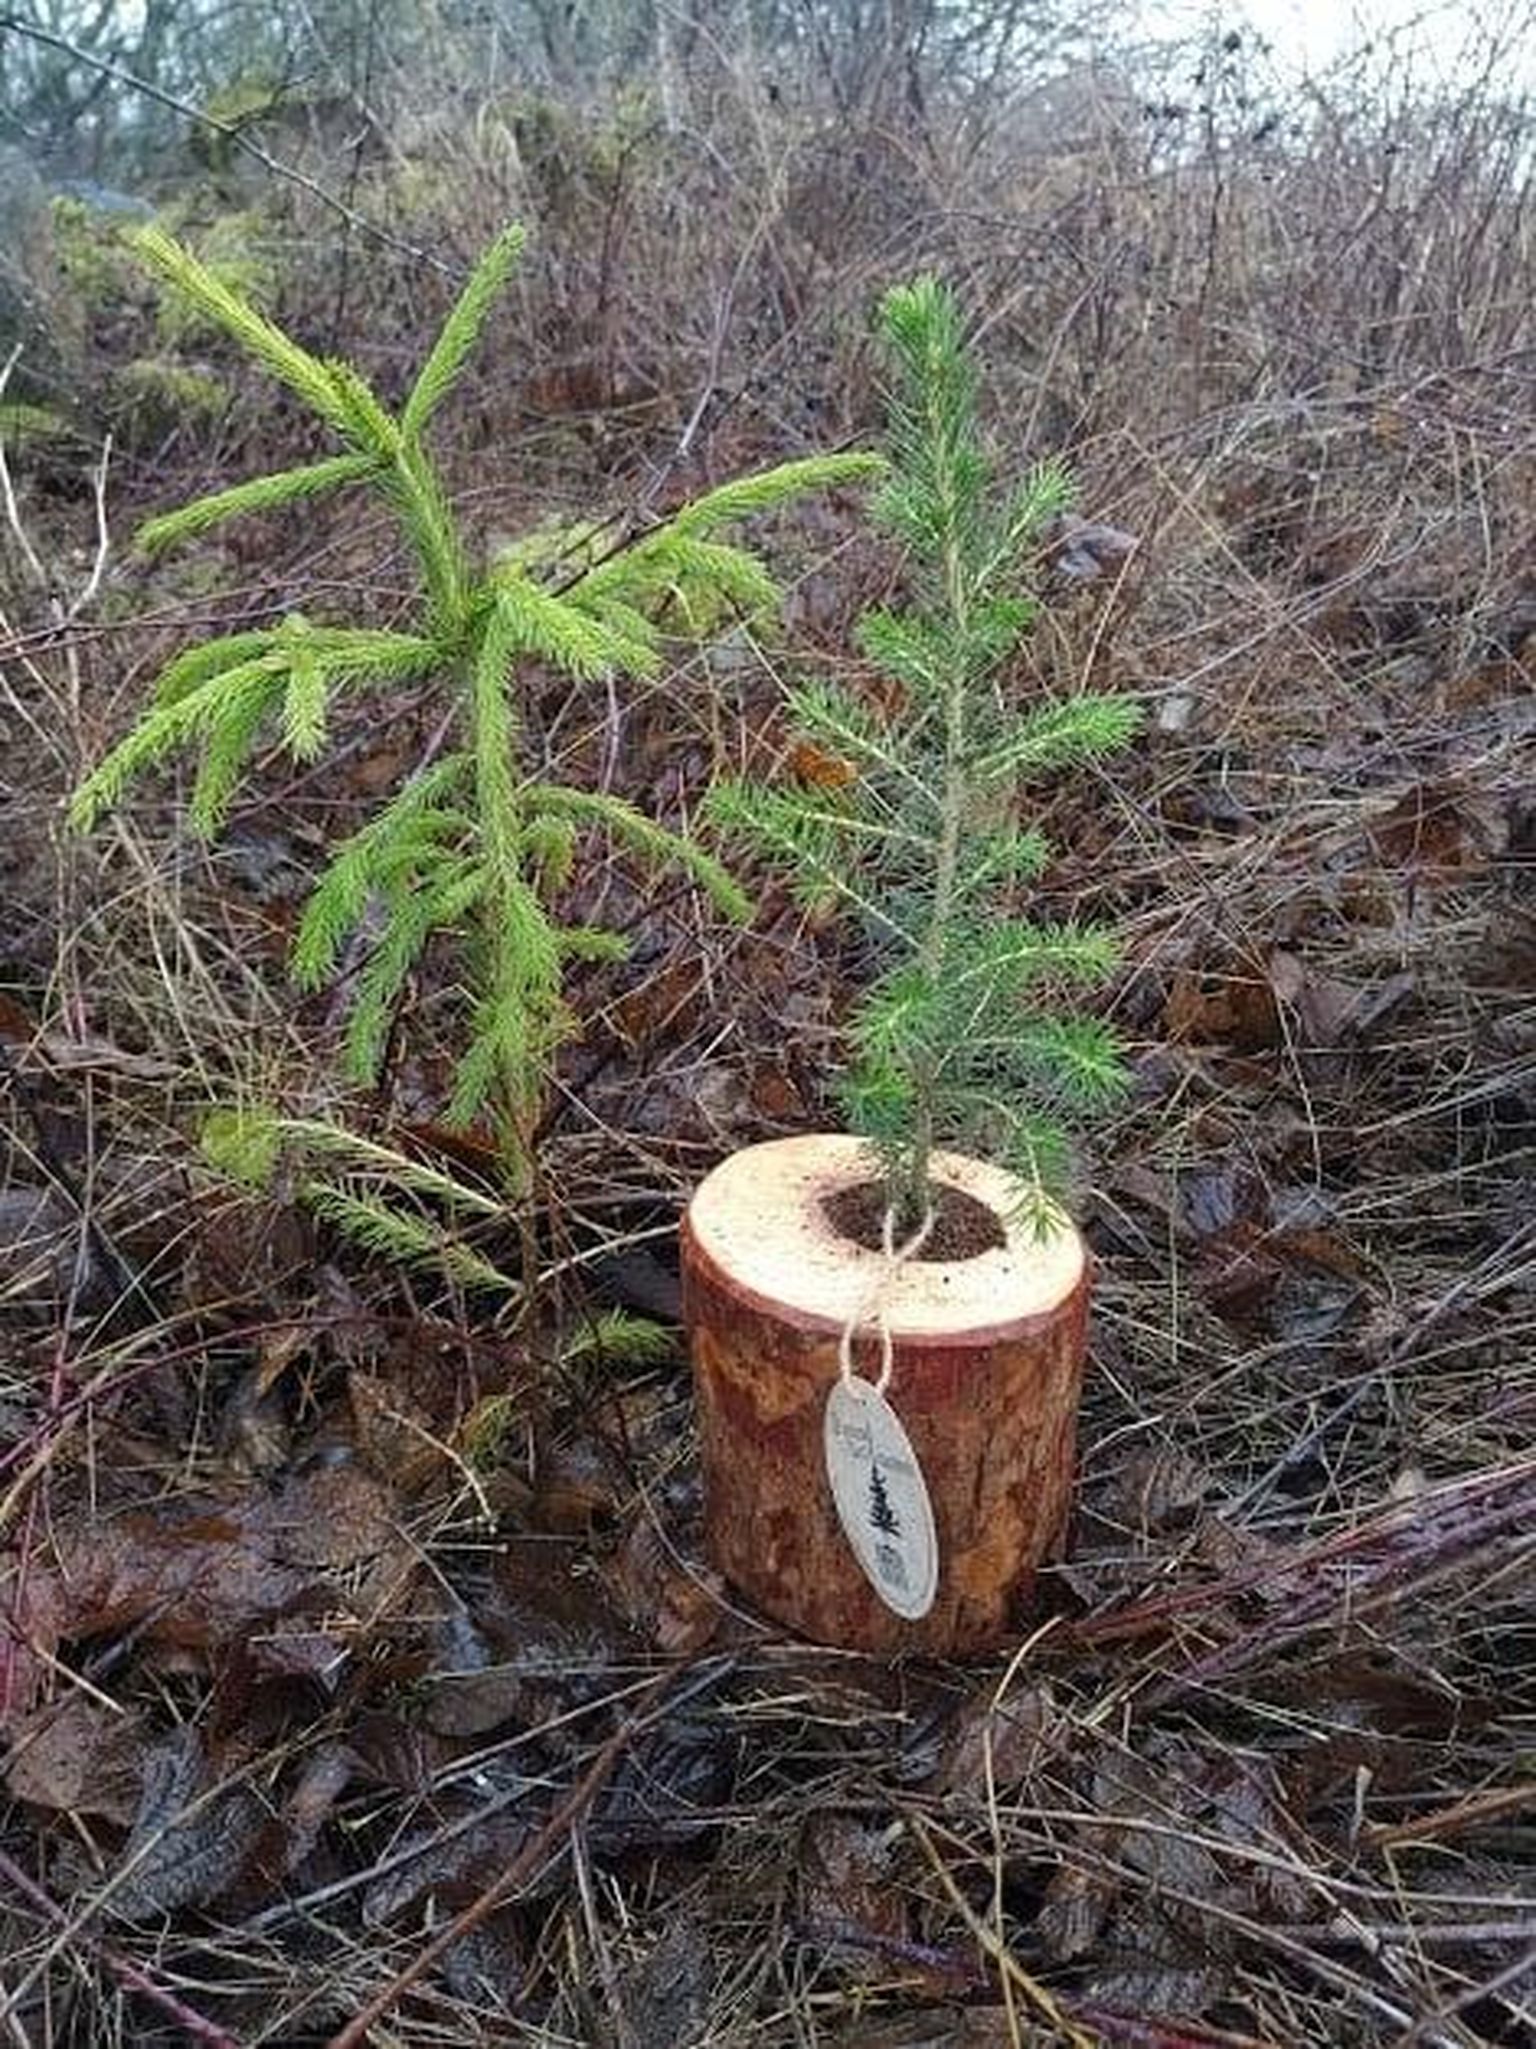 West Christmas Tree istutas kevadel Läänemaal maha paarsada kuuske, mis olid renditud ja pärast jõule tagastatud. Ühe sellise kuuse kõrval potis seisab sel aastal pakutav rendikuusk.